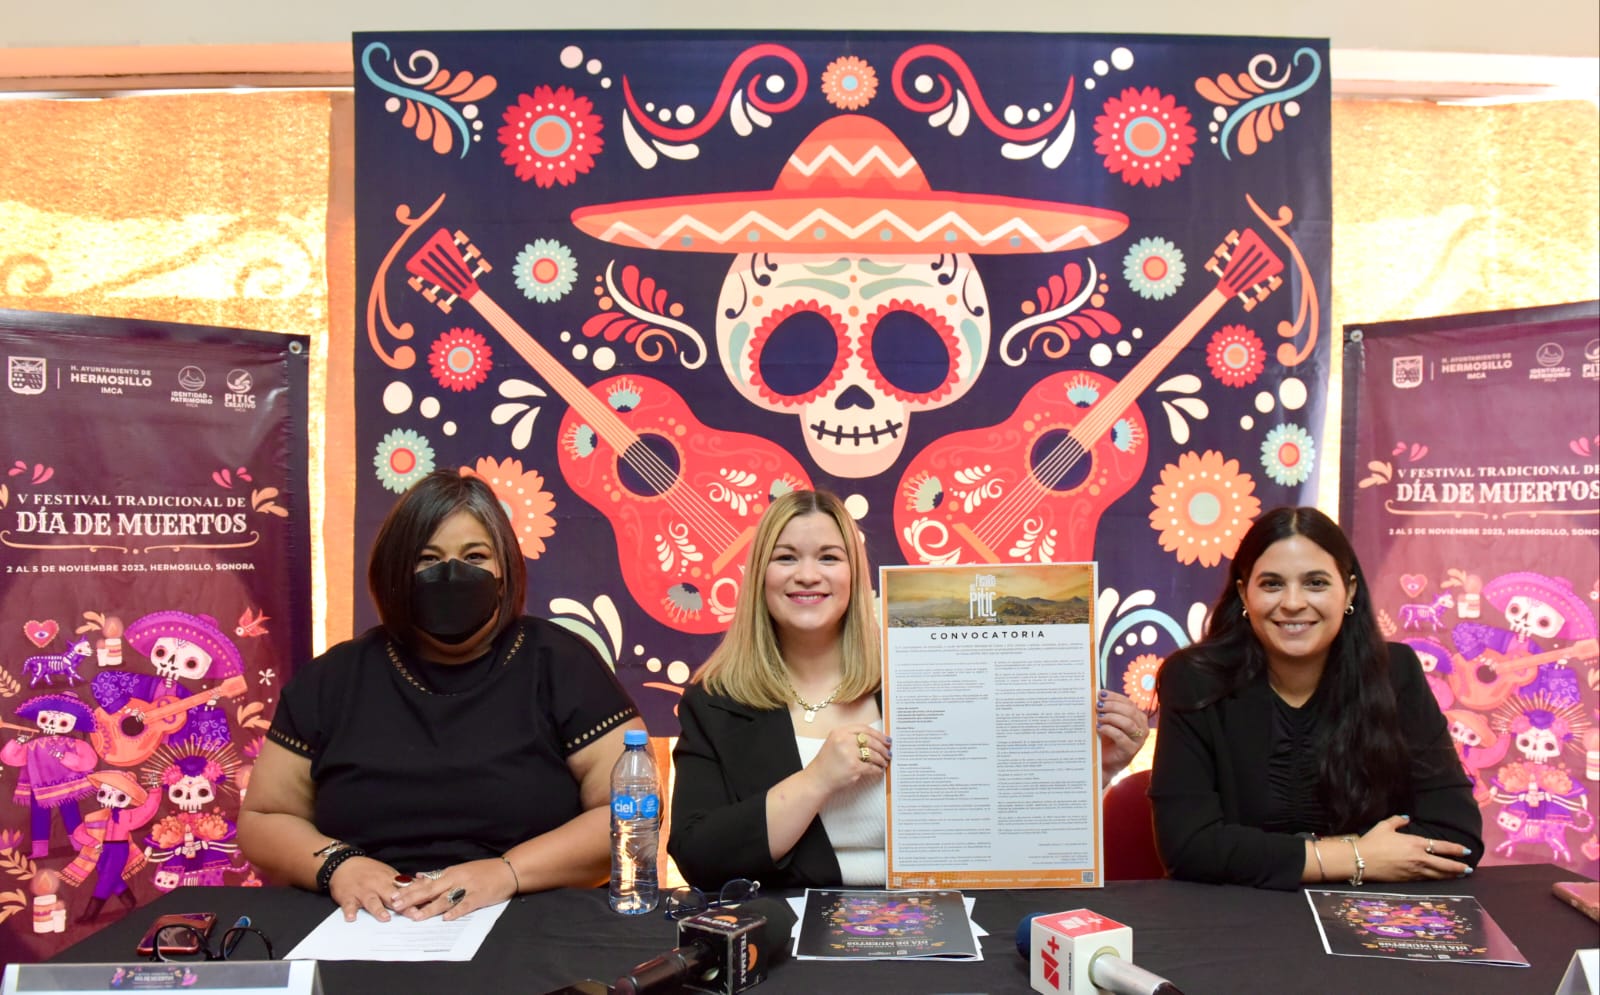 Lanzan convocatoria para artistas que deseen participar en Fiestas del Pitic